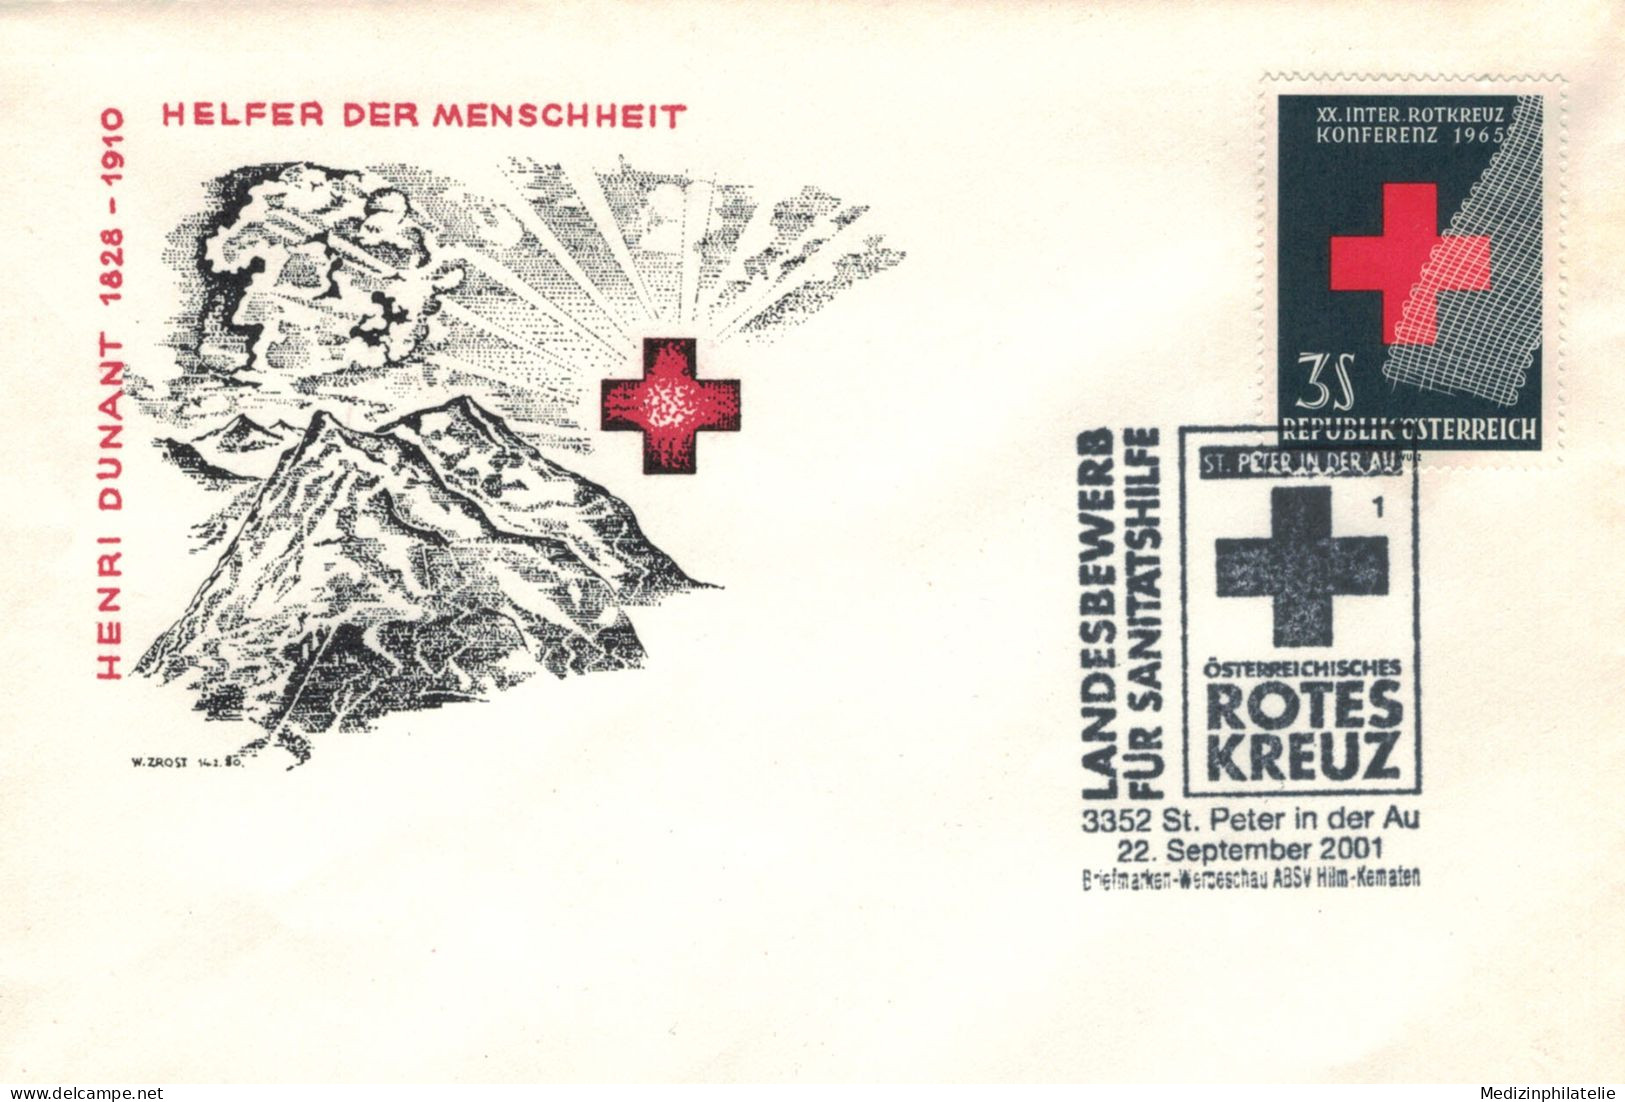 Rotes Kreuz - 3352 St. Peter In Der Au 2001 - First Aid